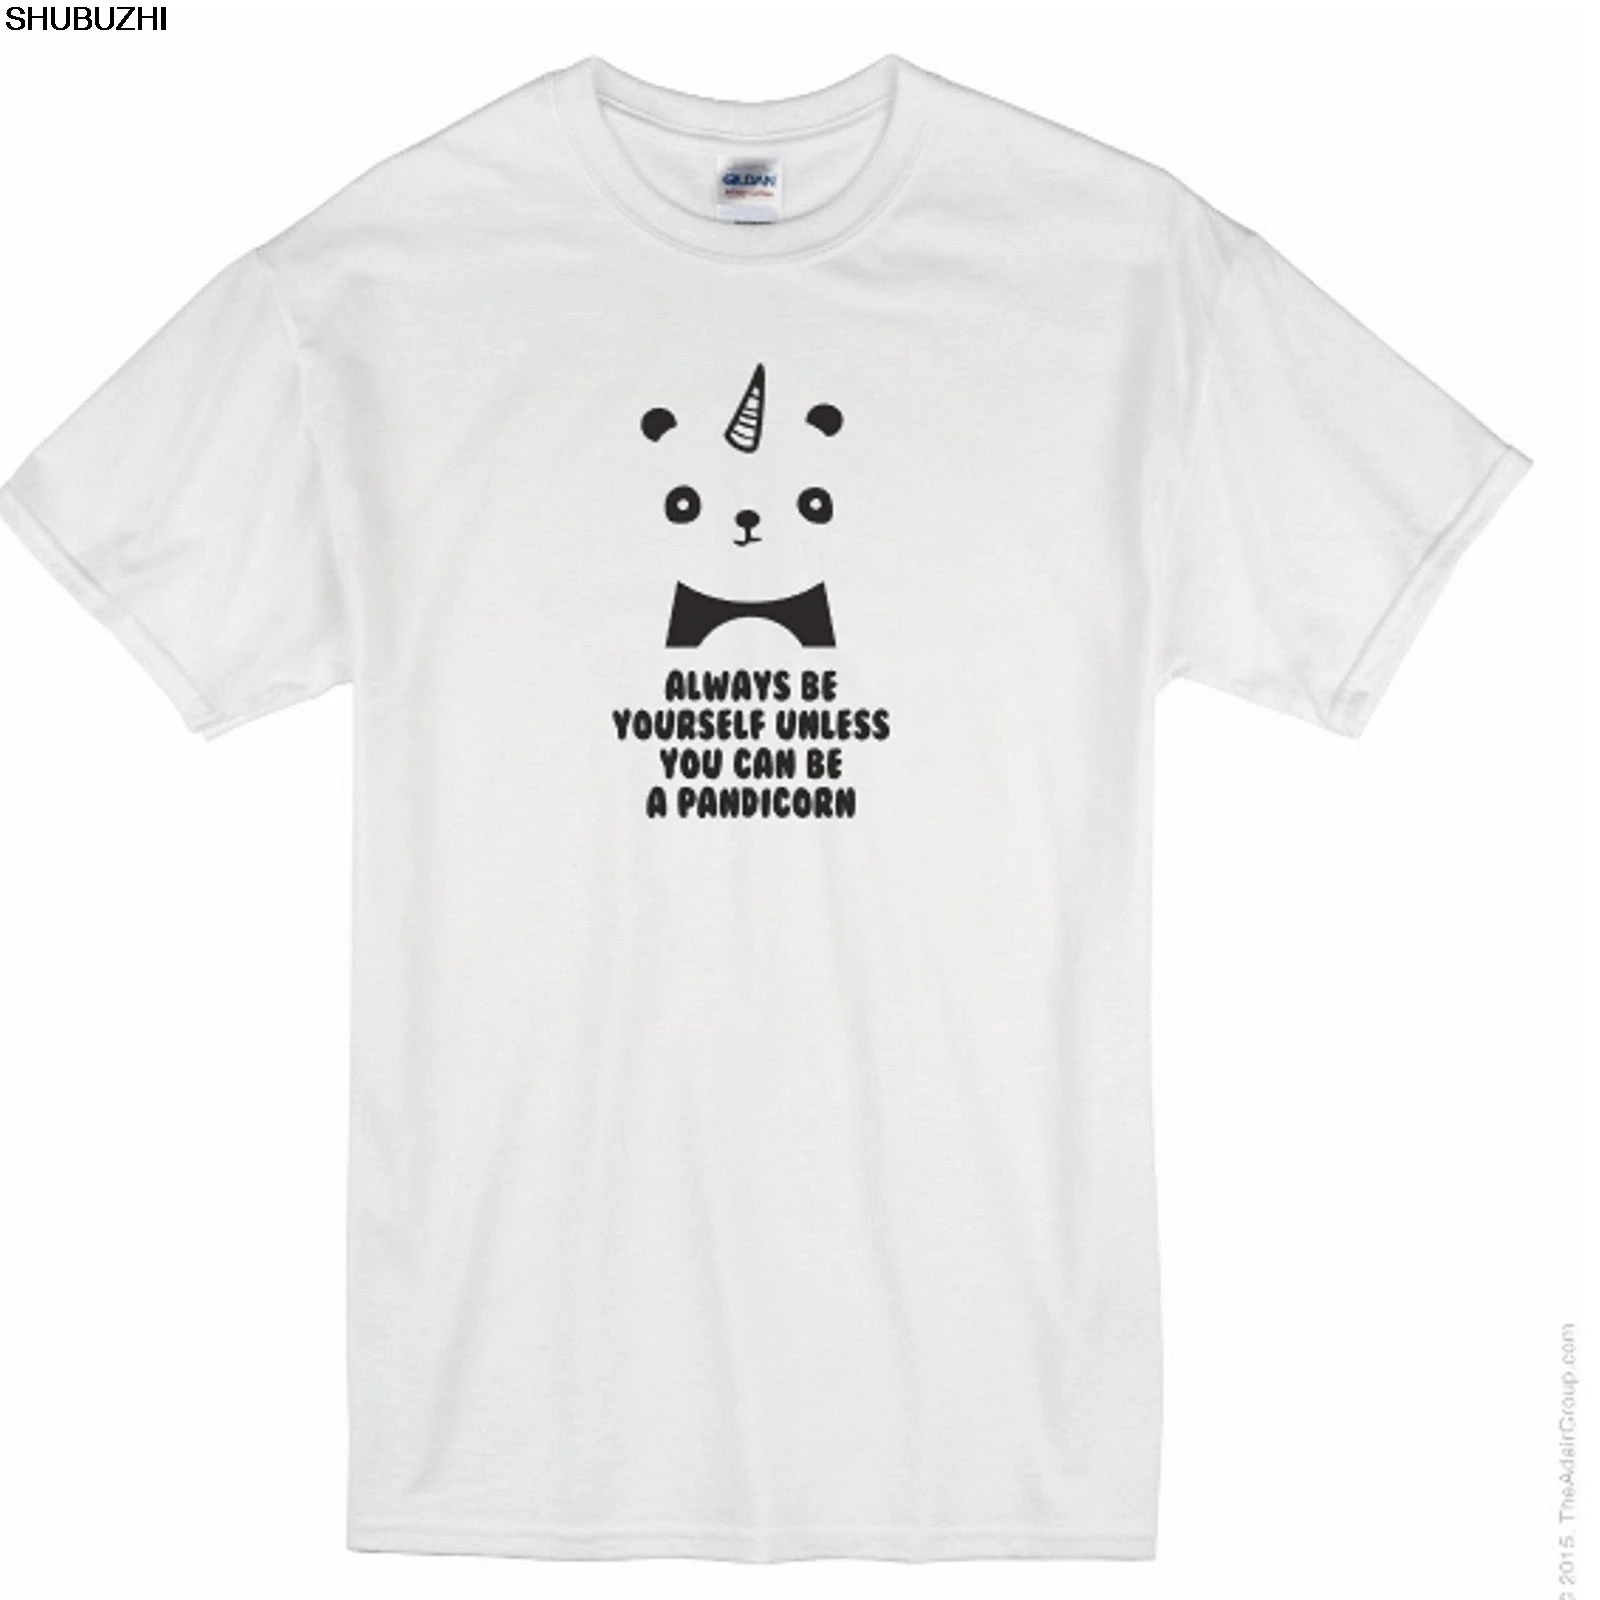 

PANDICORN TShirt - Funny Unicorn Panda T Shirt - Unisex Ladies Mens men brand tee-shirt summer cotton man tshirt